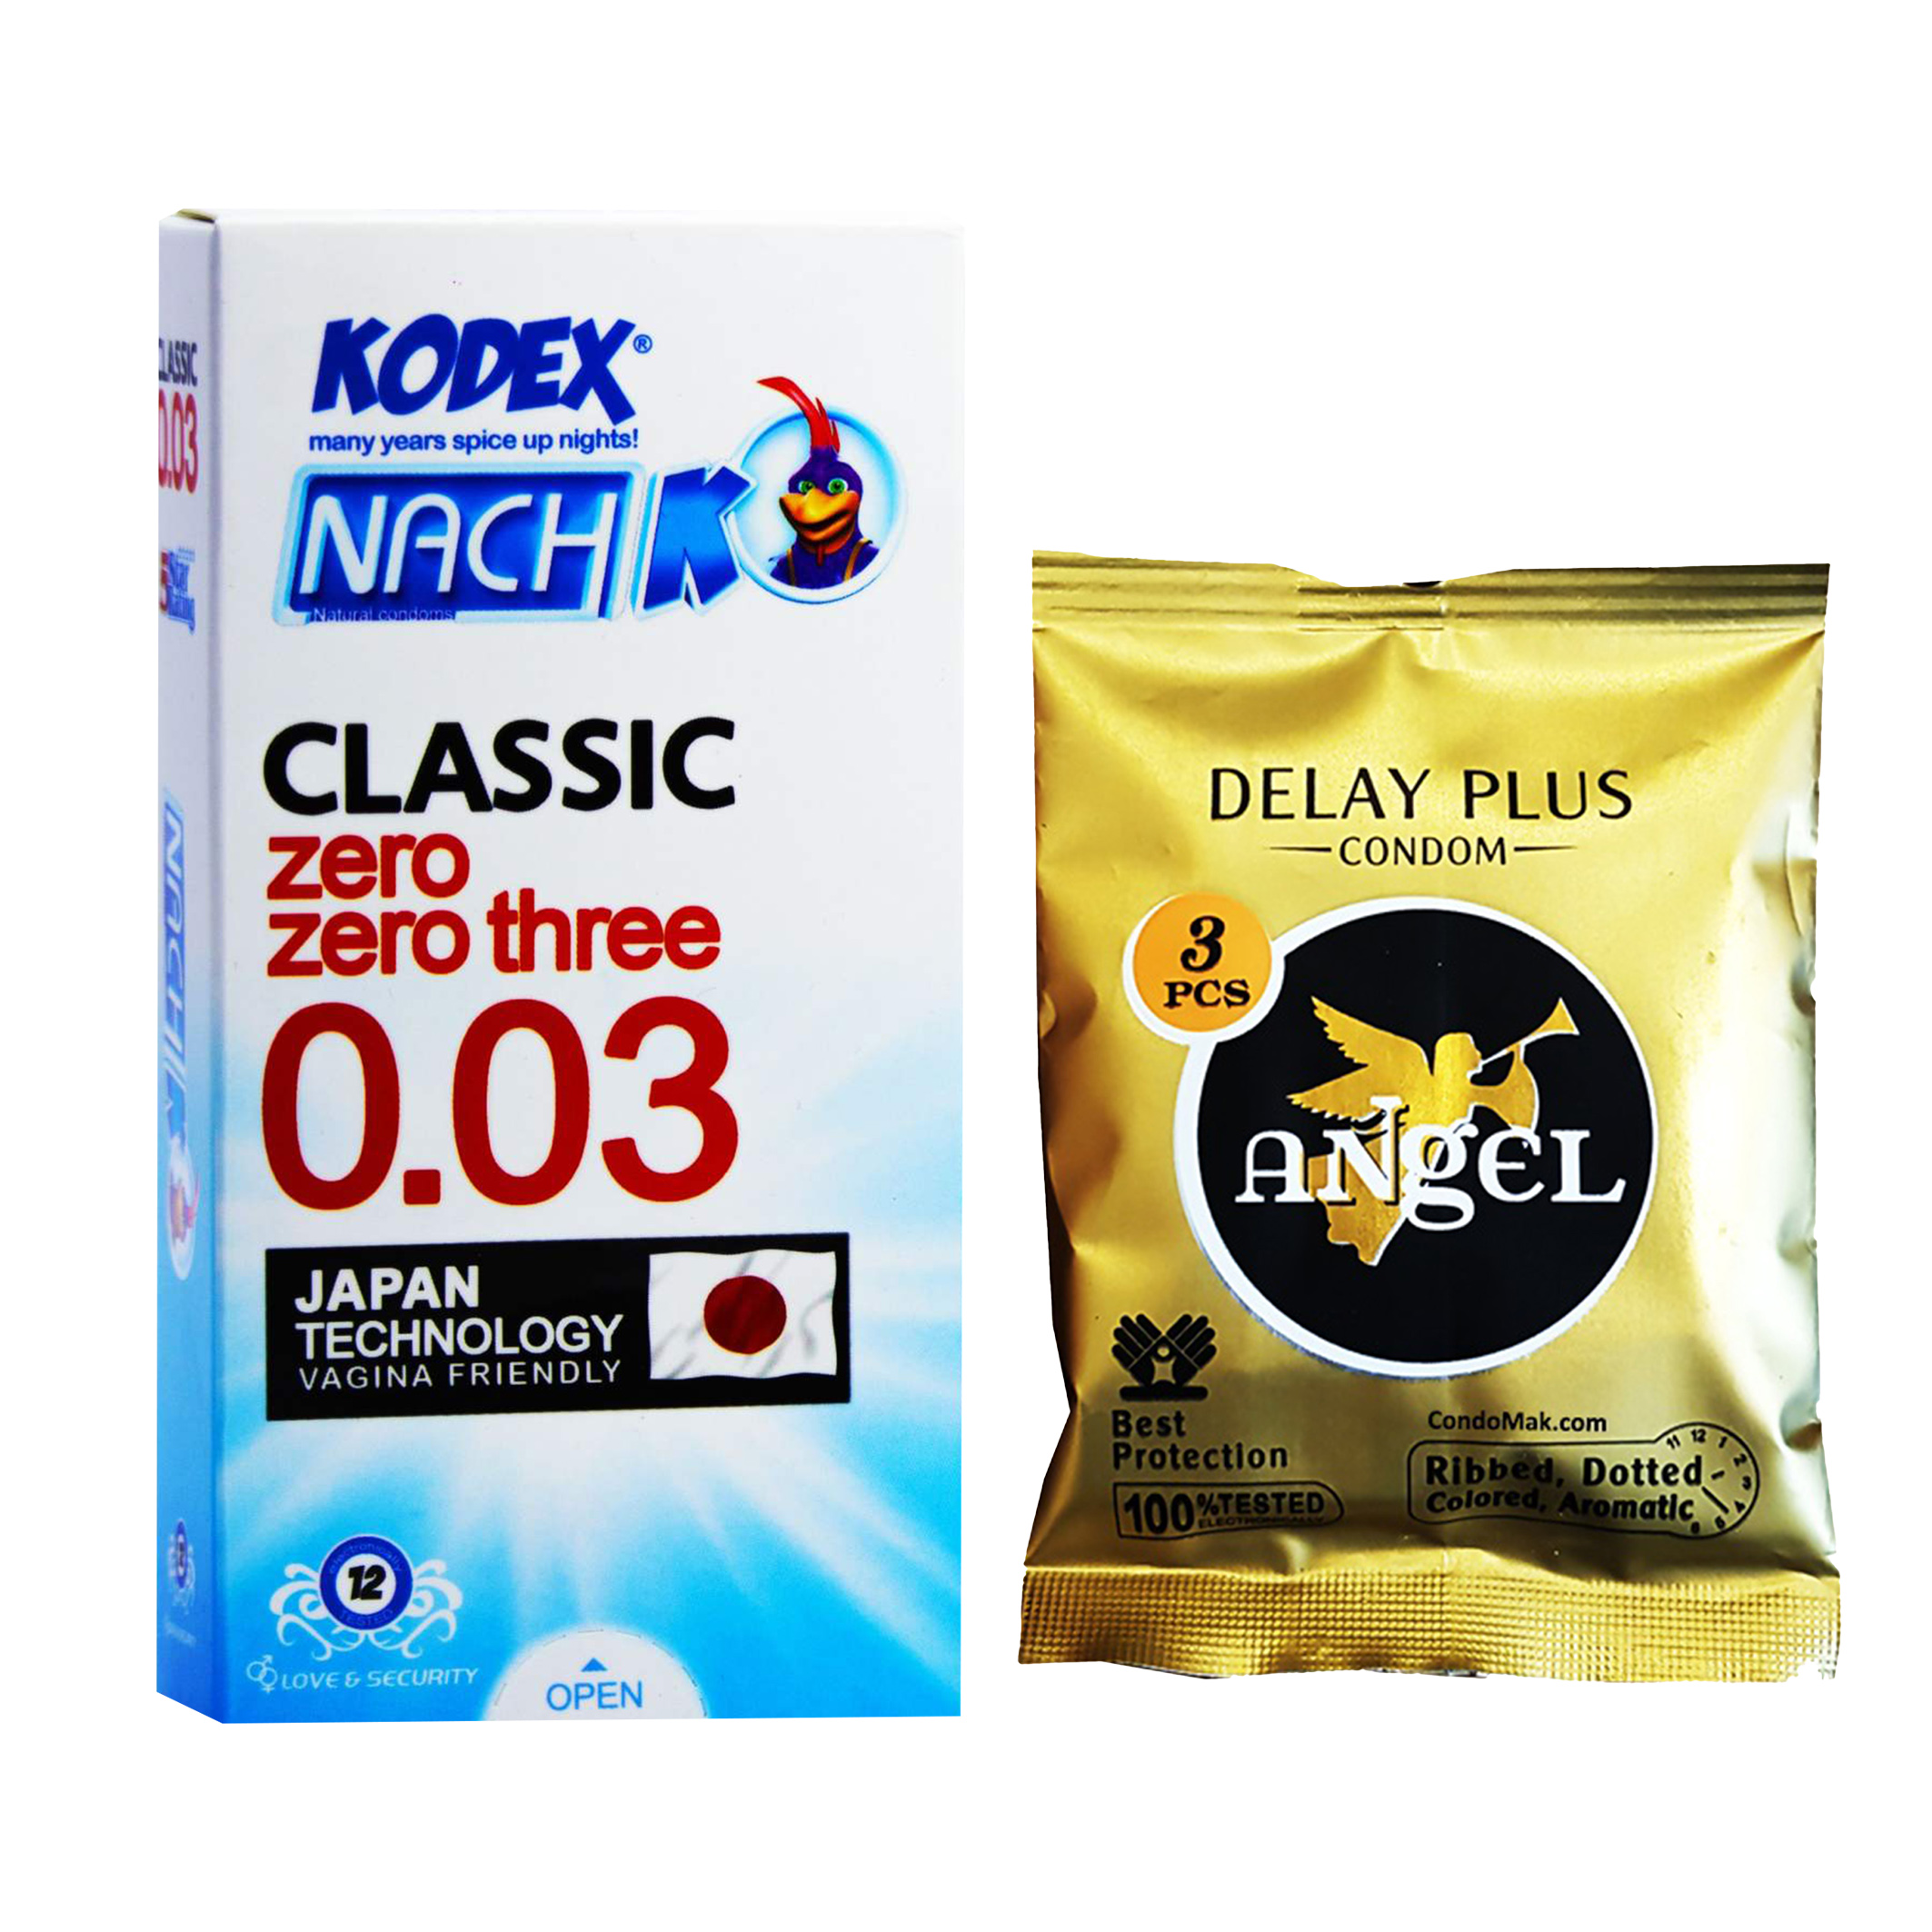 کاندوم ناچ کدکس مدل 03 بسته 12 عددی به همراه کاندوم انجل مدل DELAY PLUS بسته 3 عددی